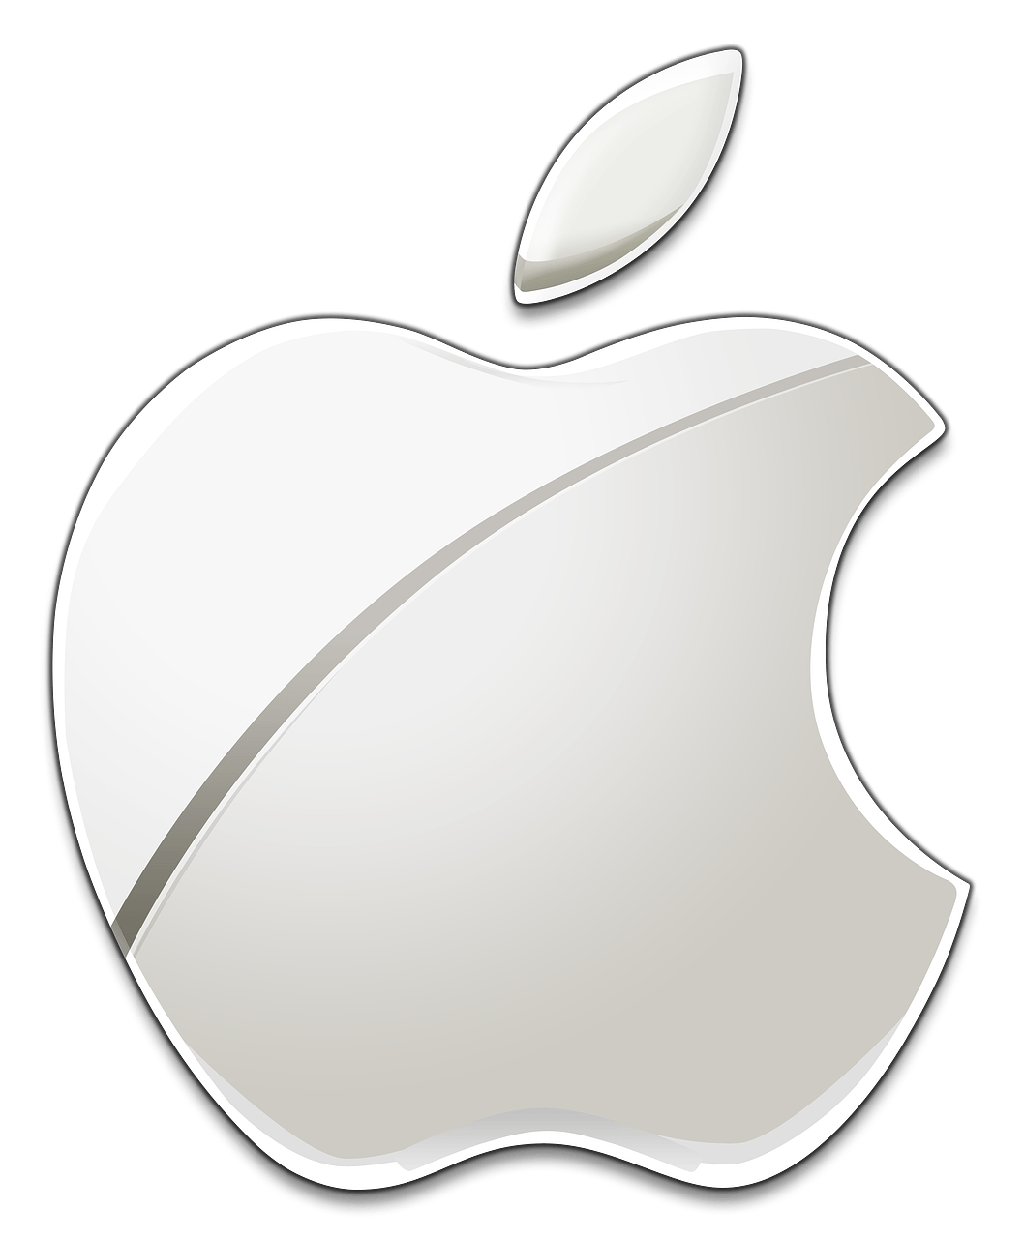 Current Apple Logo - Apple logo PNG image free download